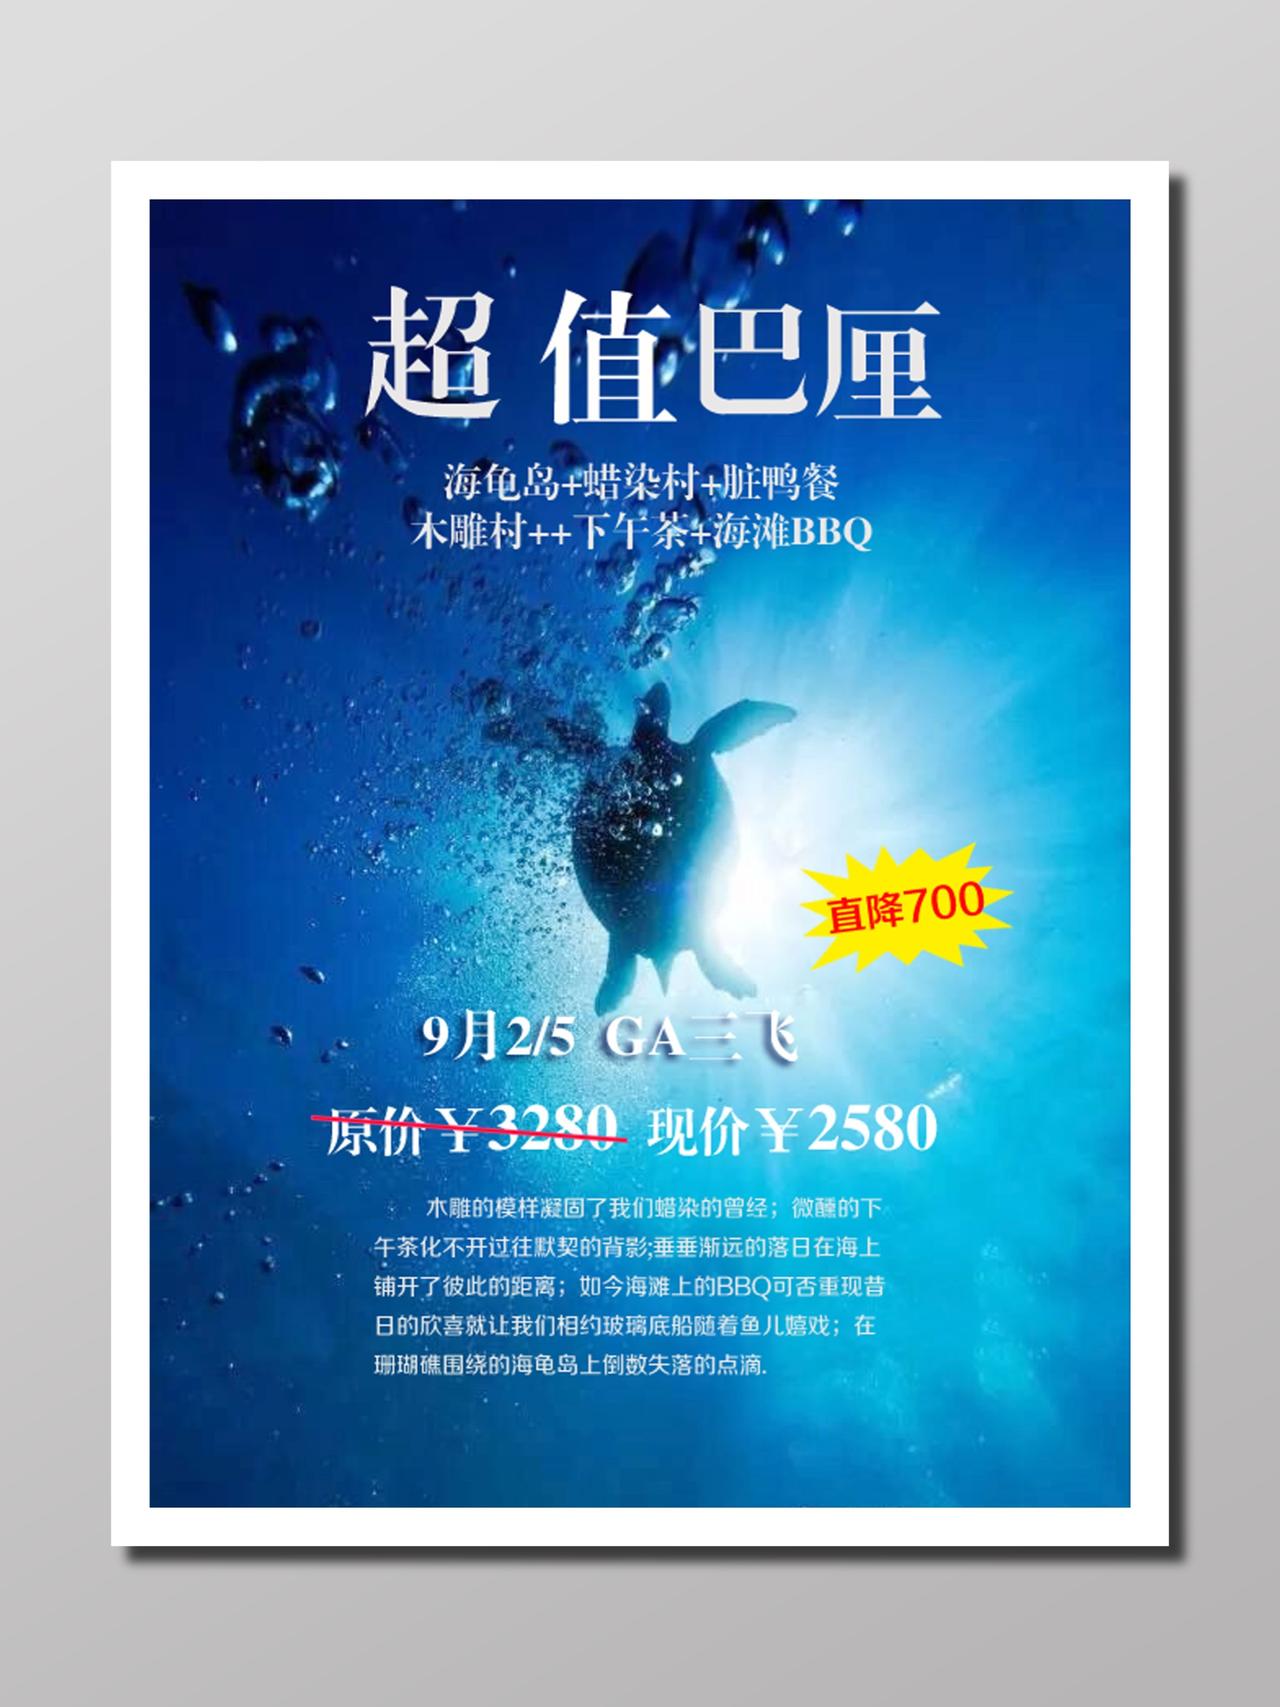 岛屿旅行行程安排旅游报价深海蓝色果冻海龟巴厘岛超值宣传单设计